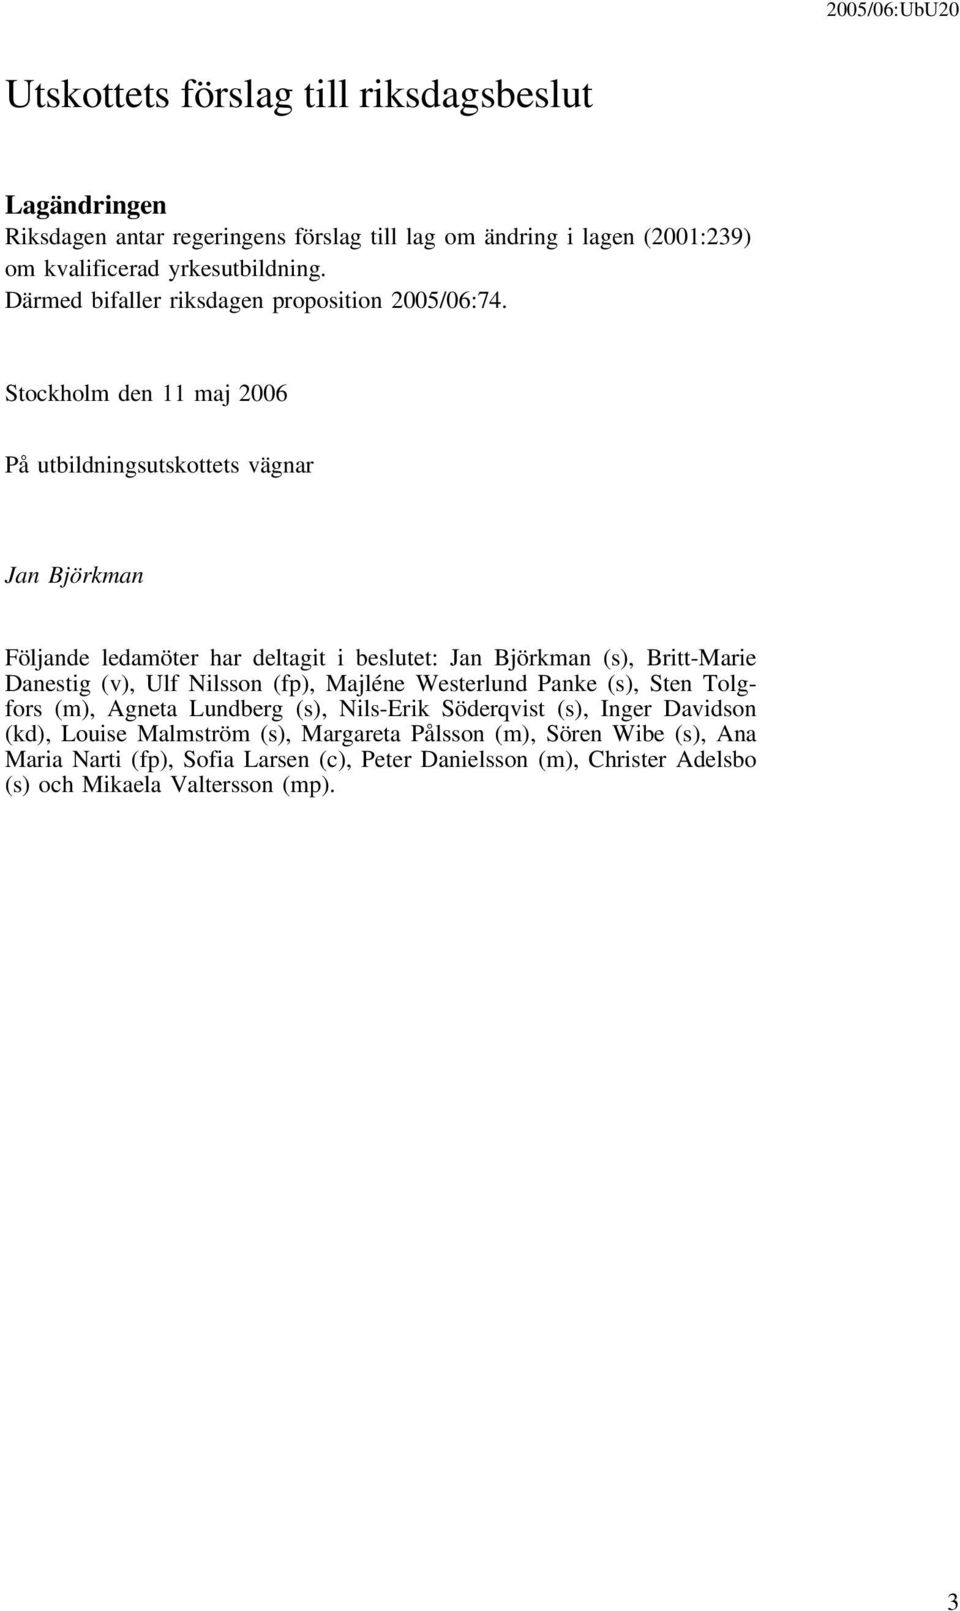 Stockholm den 11 maj 2006 På utbildningsutskottets vägnar Jan Björkman Följande ledamöter har deltagit i beslutet: Jan Björkman (s), Britt-Marie Danestig (v), Ulf